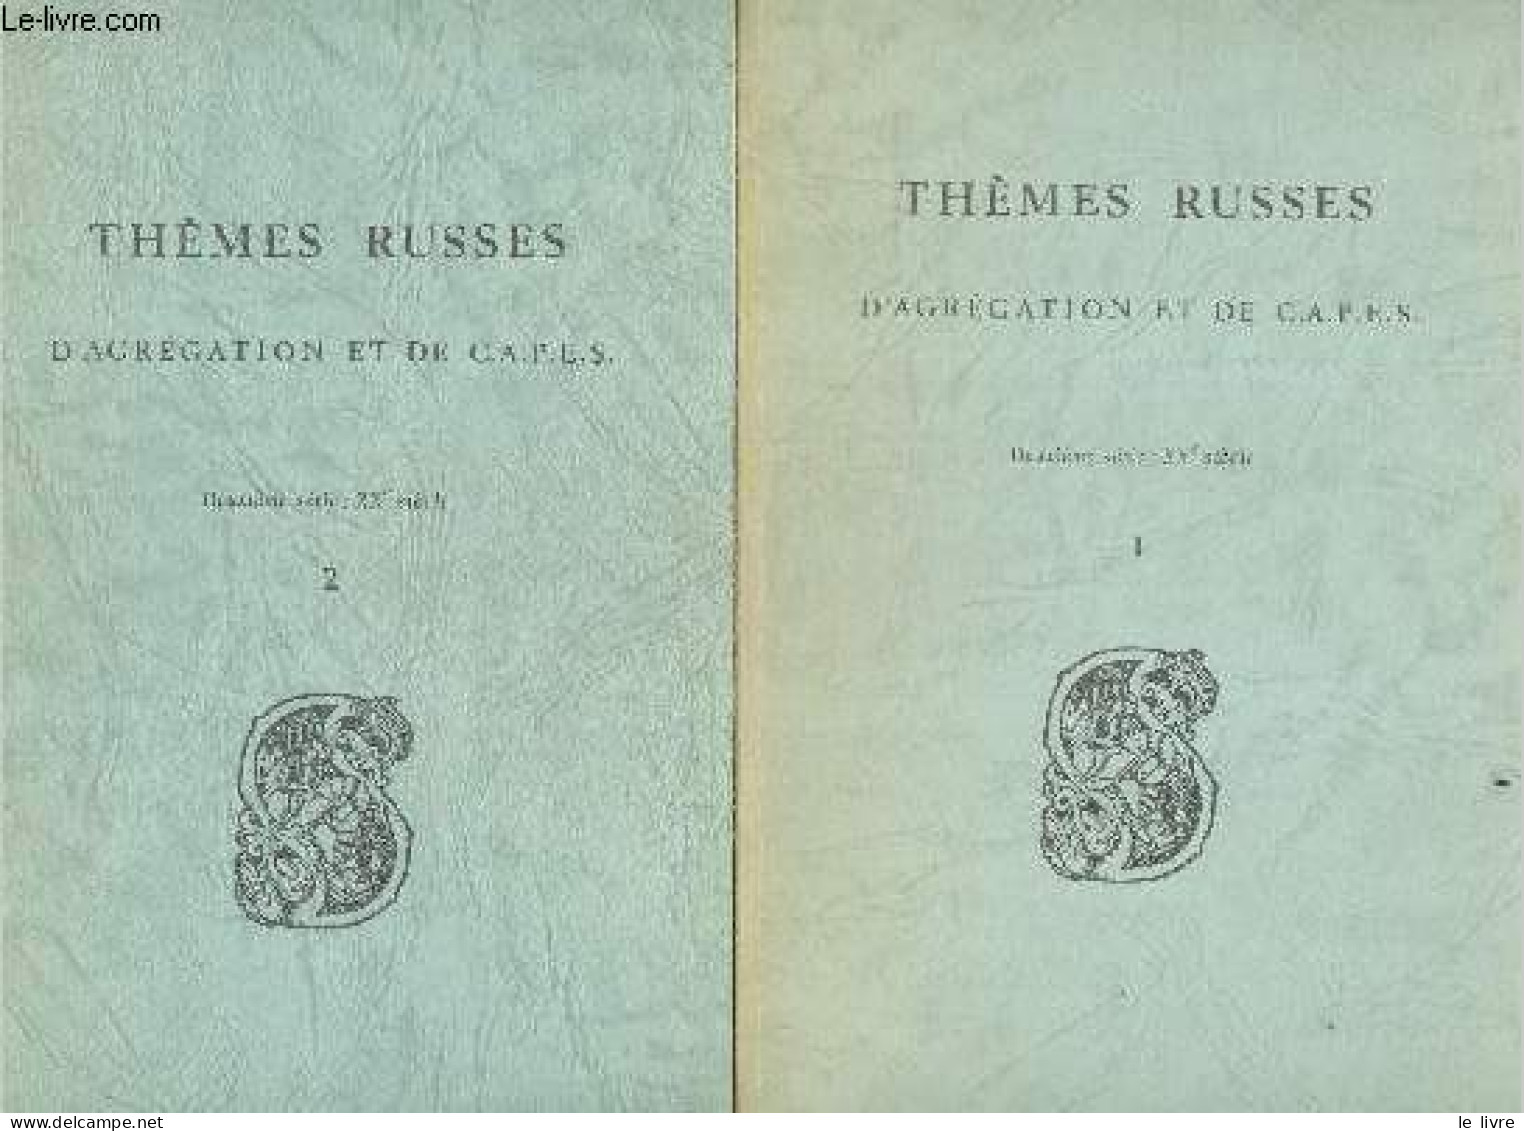 Themes Russes D'agregation Et De C.A.P.E.S. - Lot De 2 Volumes : Fascicule 1 Textes Et Traductions + Fascicule 2 Explica - Ontwikkeling